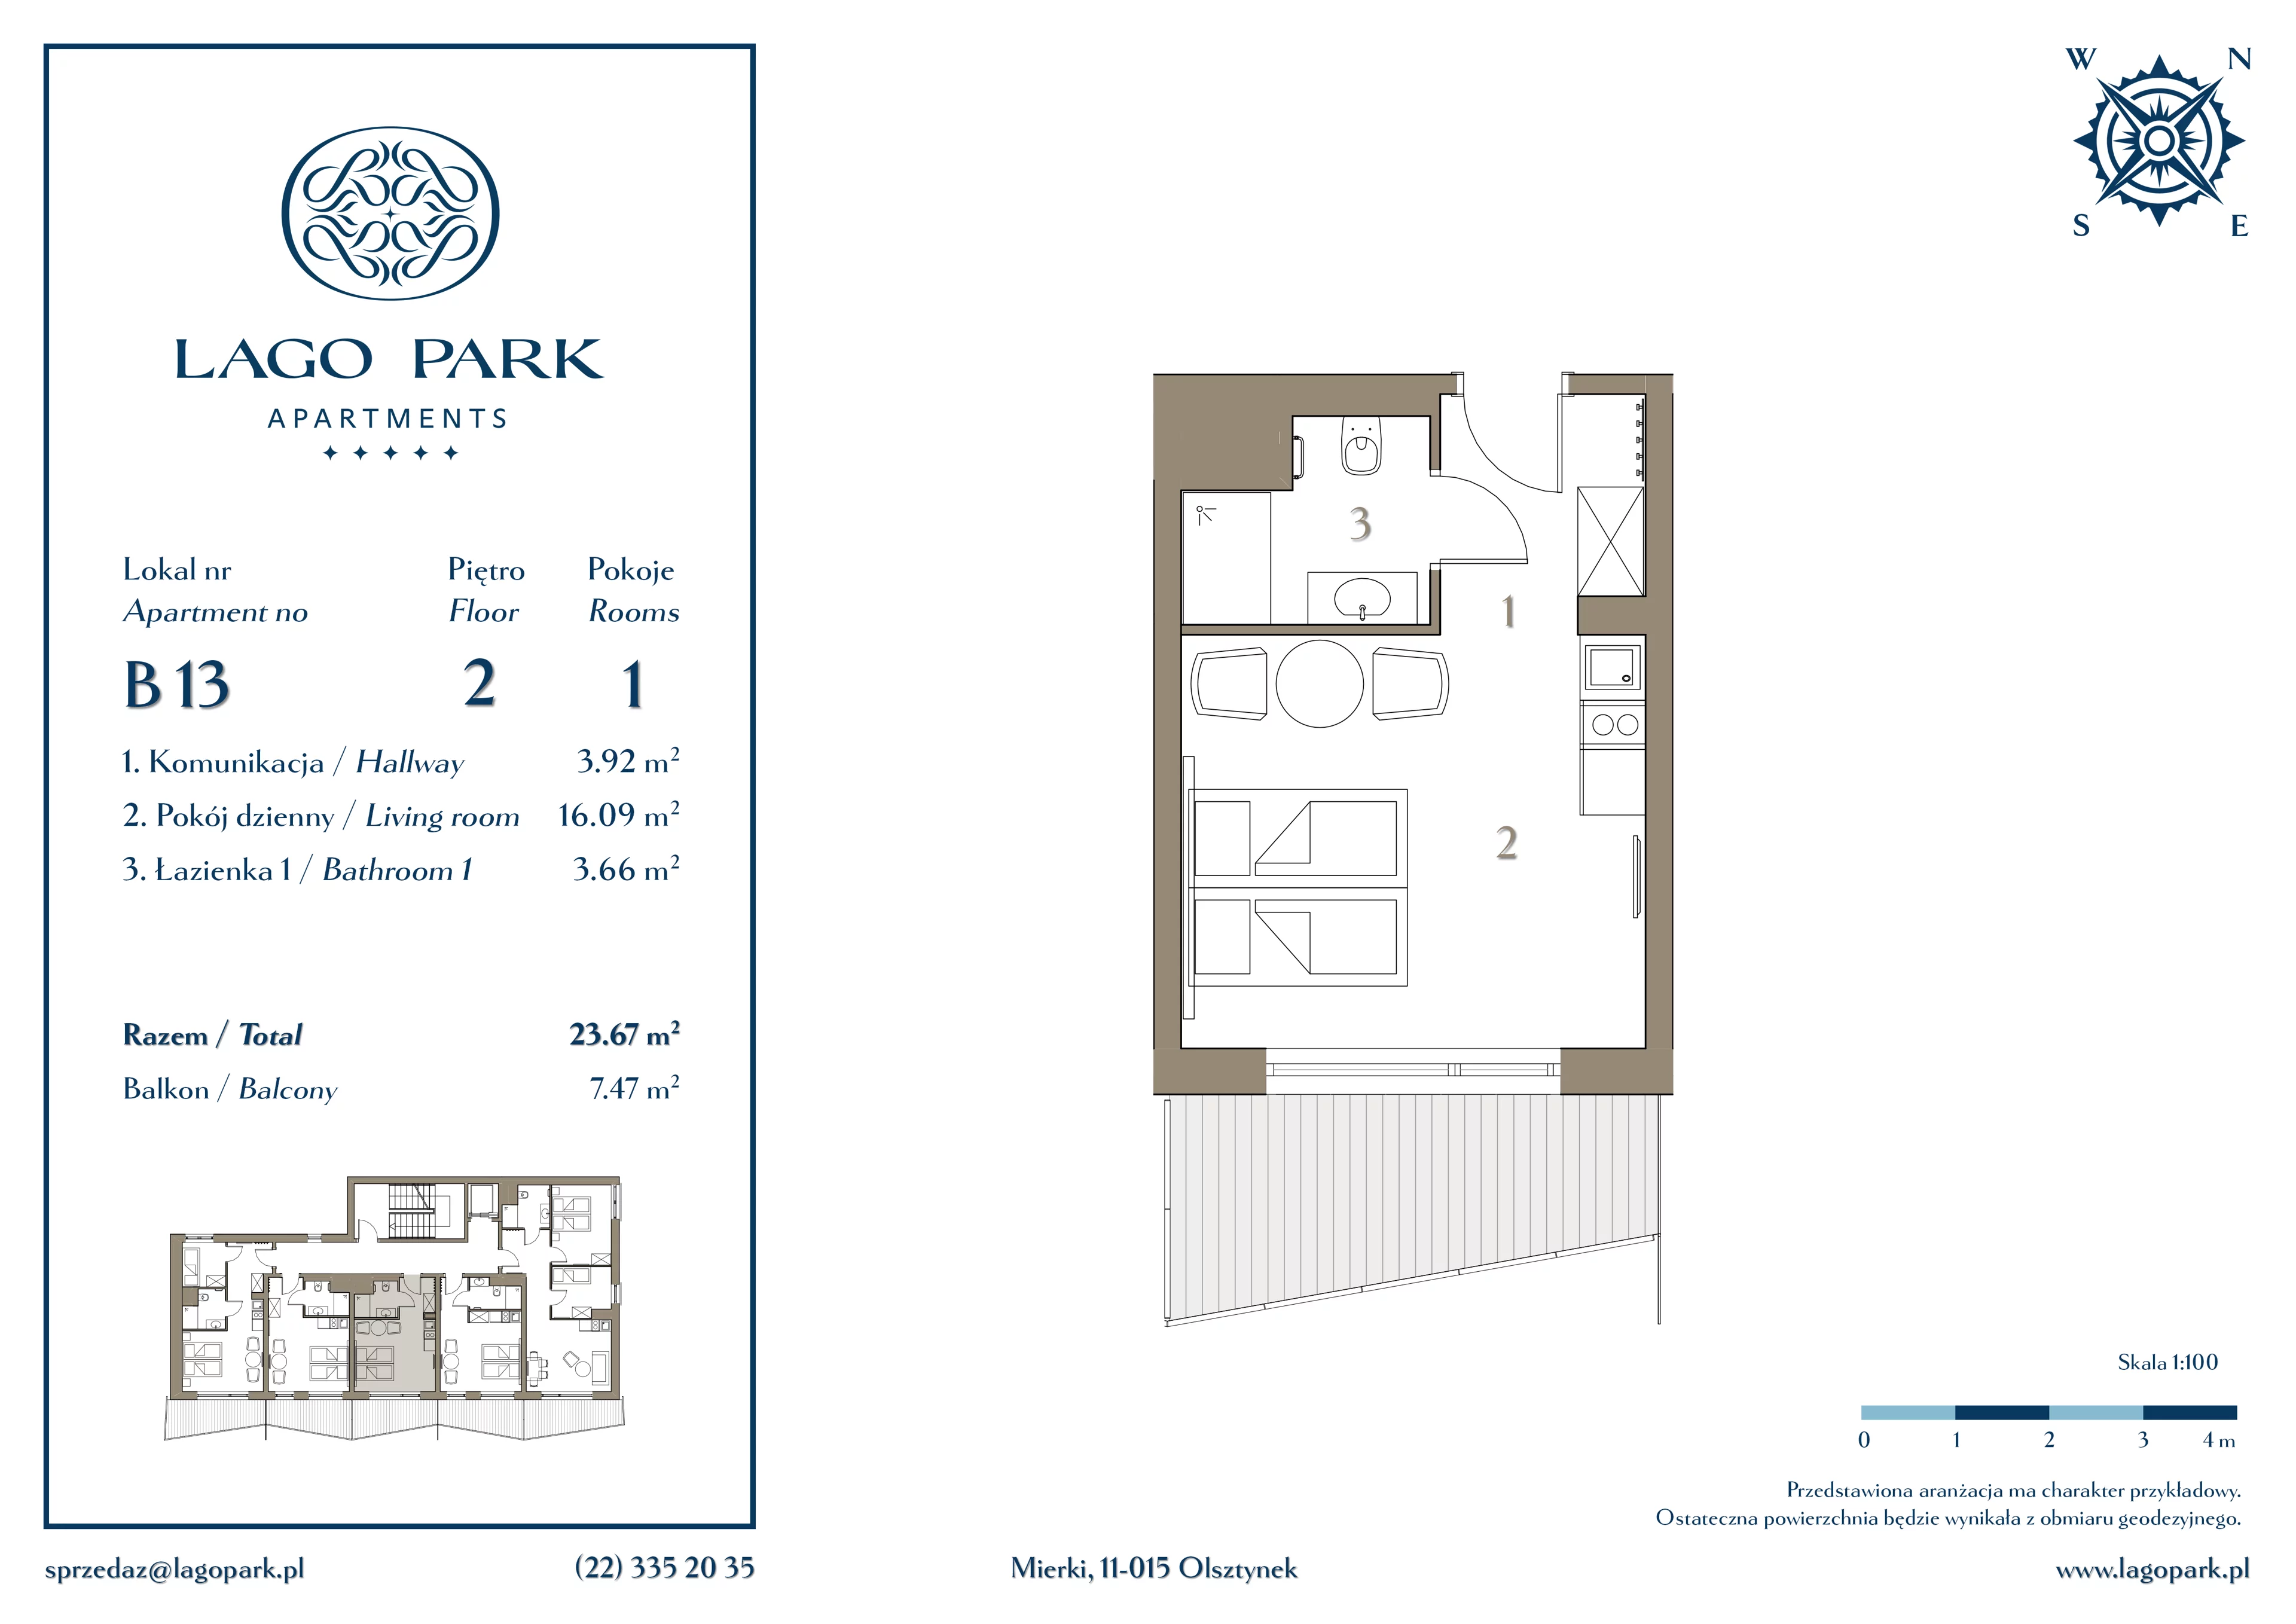 Apartament inwestycyjny 23,56 m², piętro 2, oferta nr B13, Lago Park Apartments by Aries, Mierki, Kołatek 2